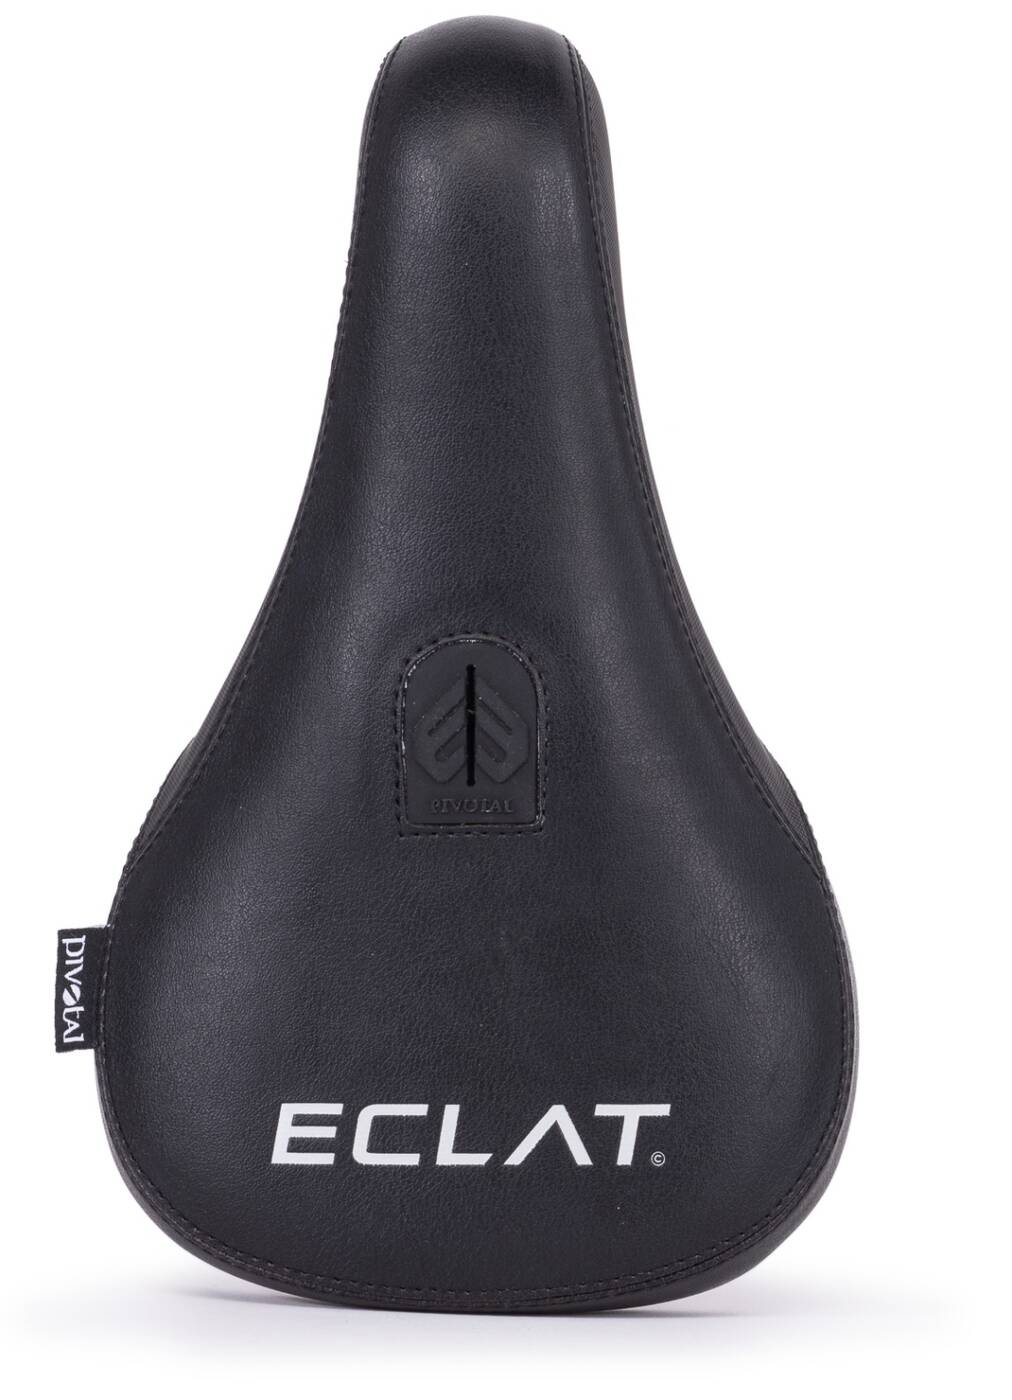 Eclat Bios Fat V2 Pivotal Bmx Sadel (Technical Black)